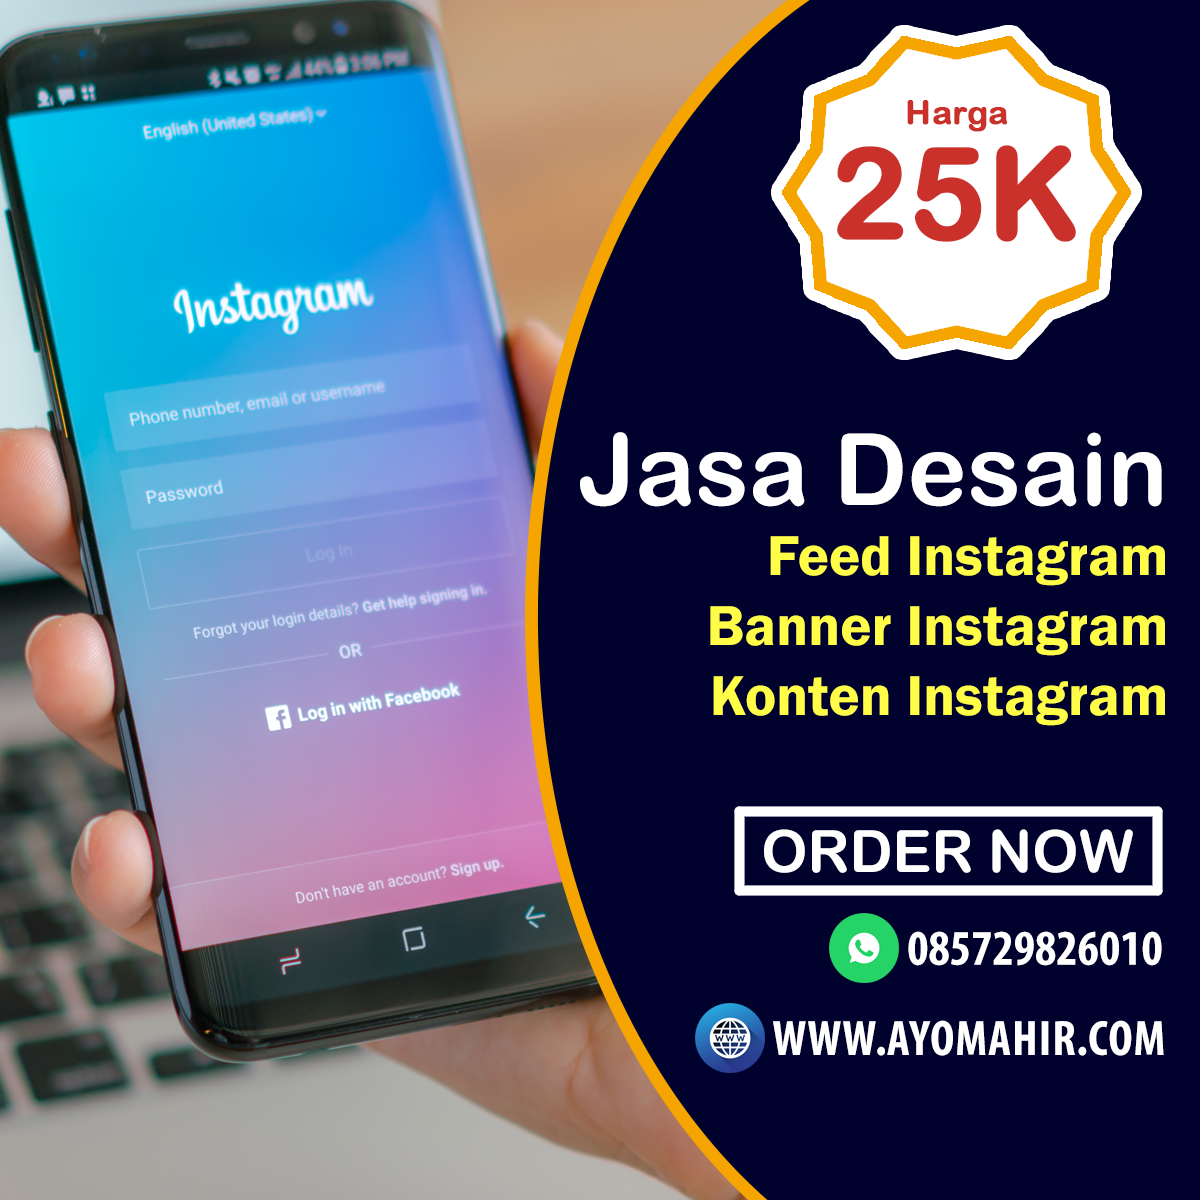 Jasa Desain Feed Instagram, Jasa Desain Banner Instagram, Jasa Desain Konten Instagram